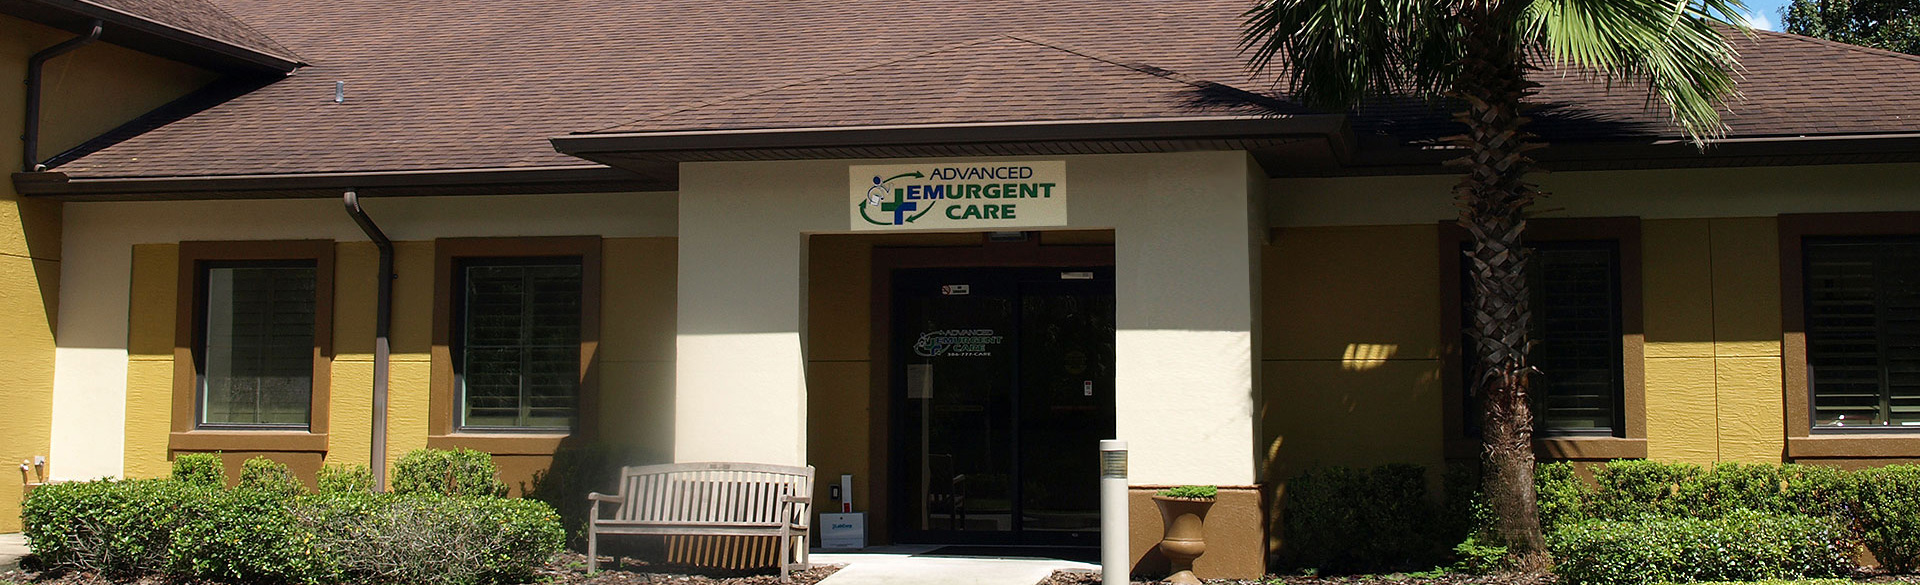 Advanced Emurgent Care Location